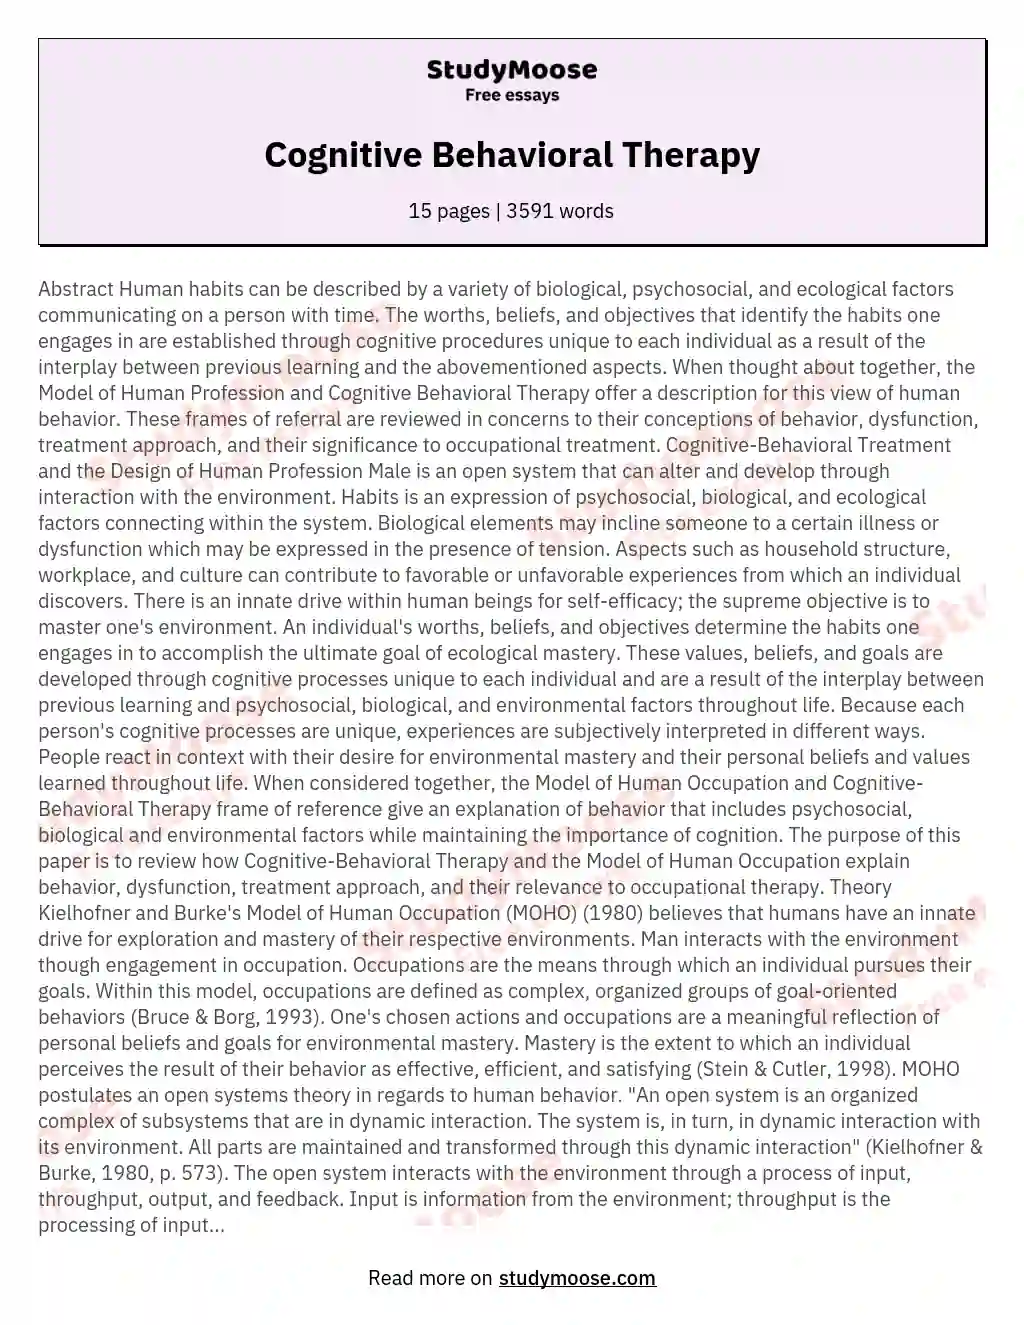 essay about cognitive psychology